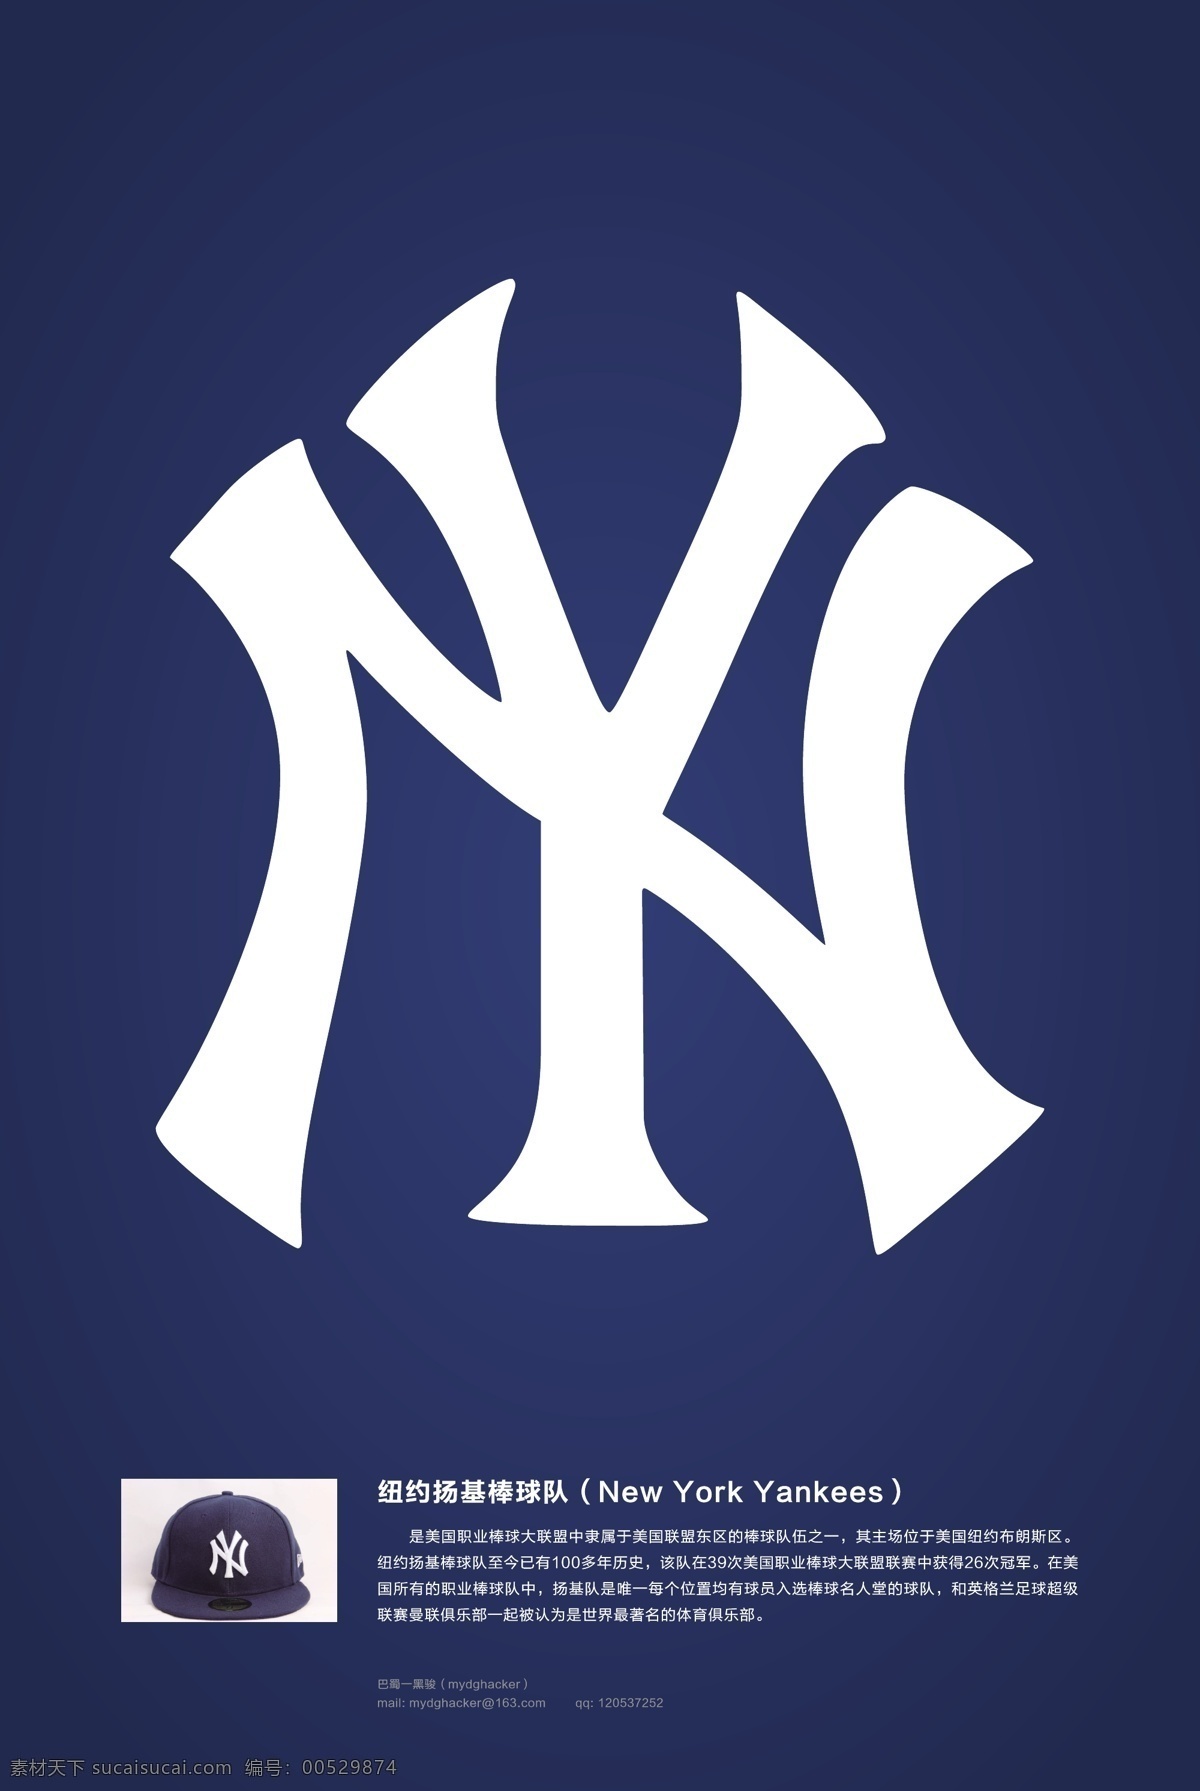 扬基 棒球队 logo 矢量 纽约 new york yankeesny 标签 矢量图 其他矢量图